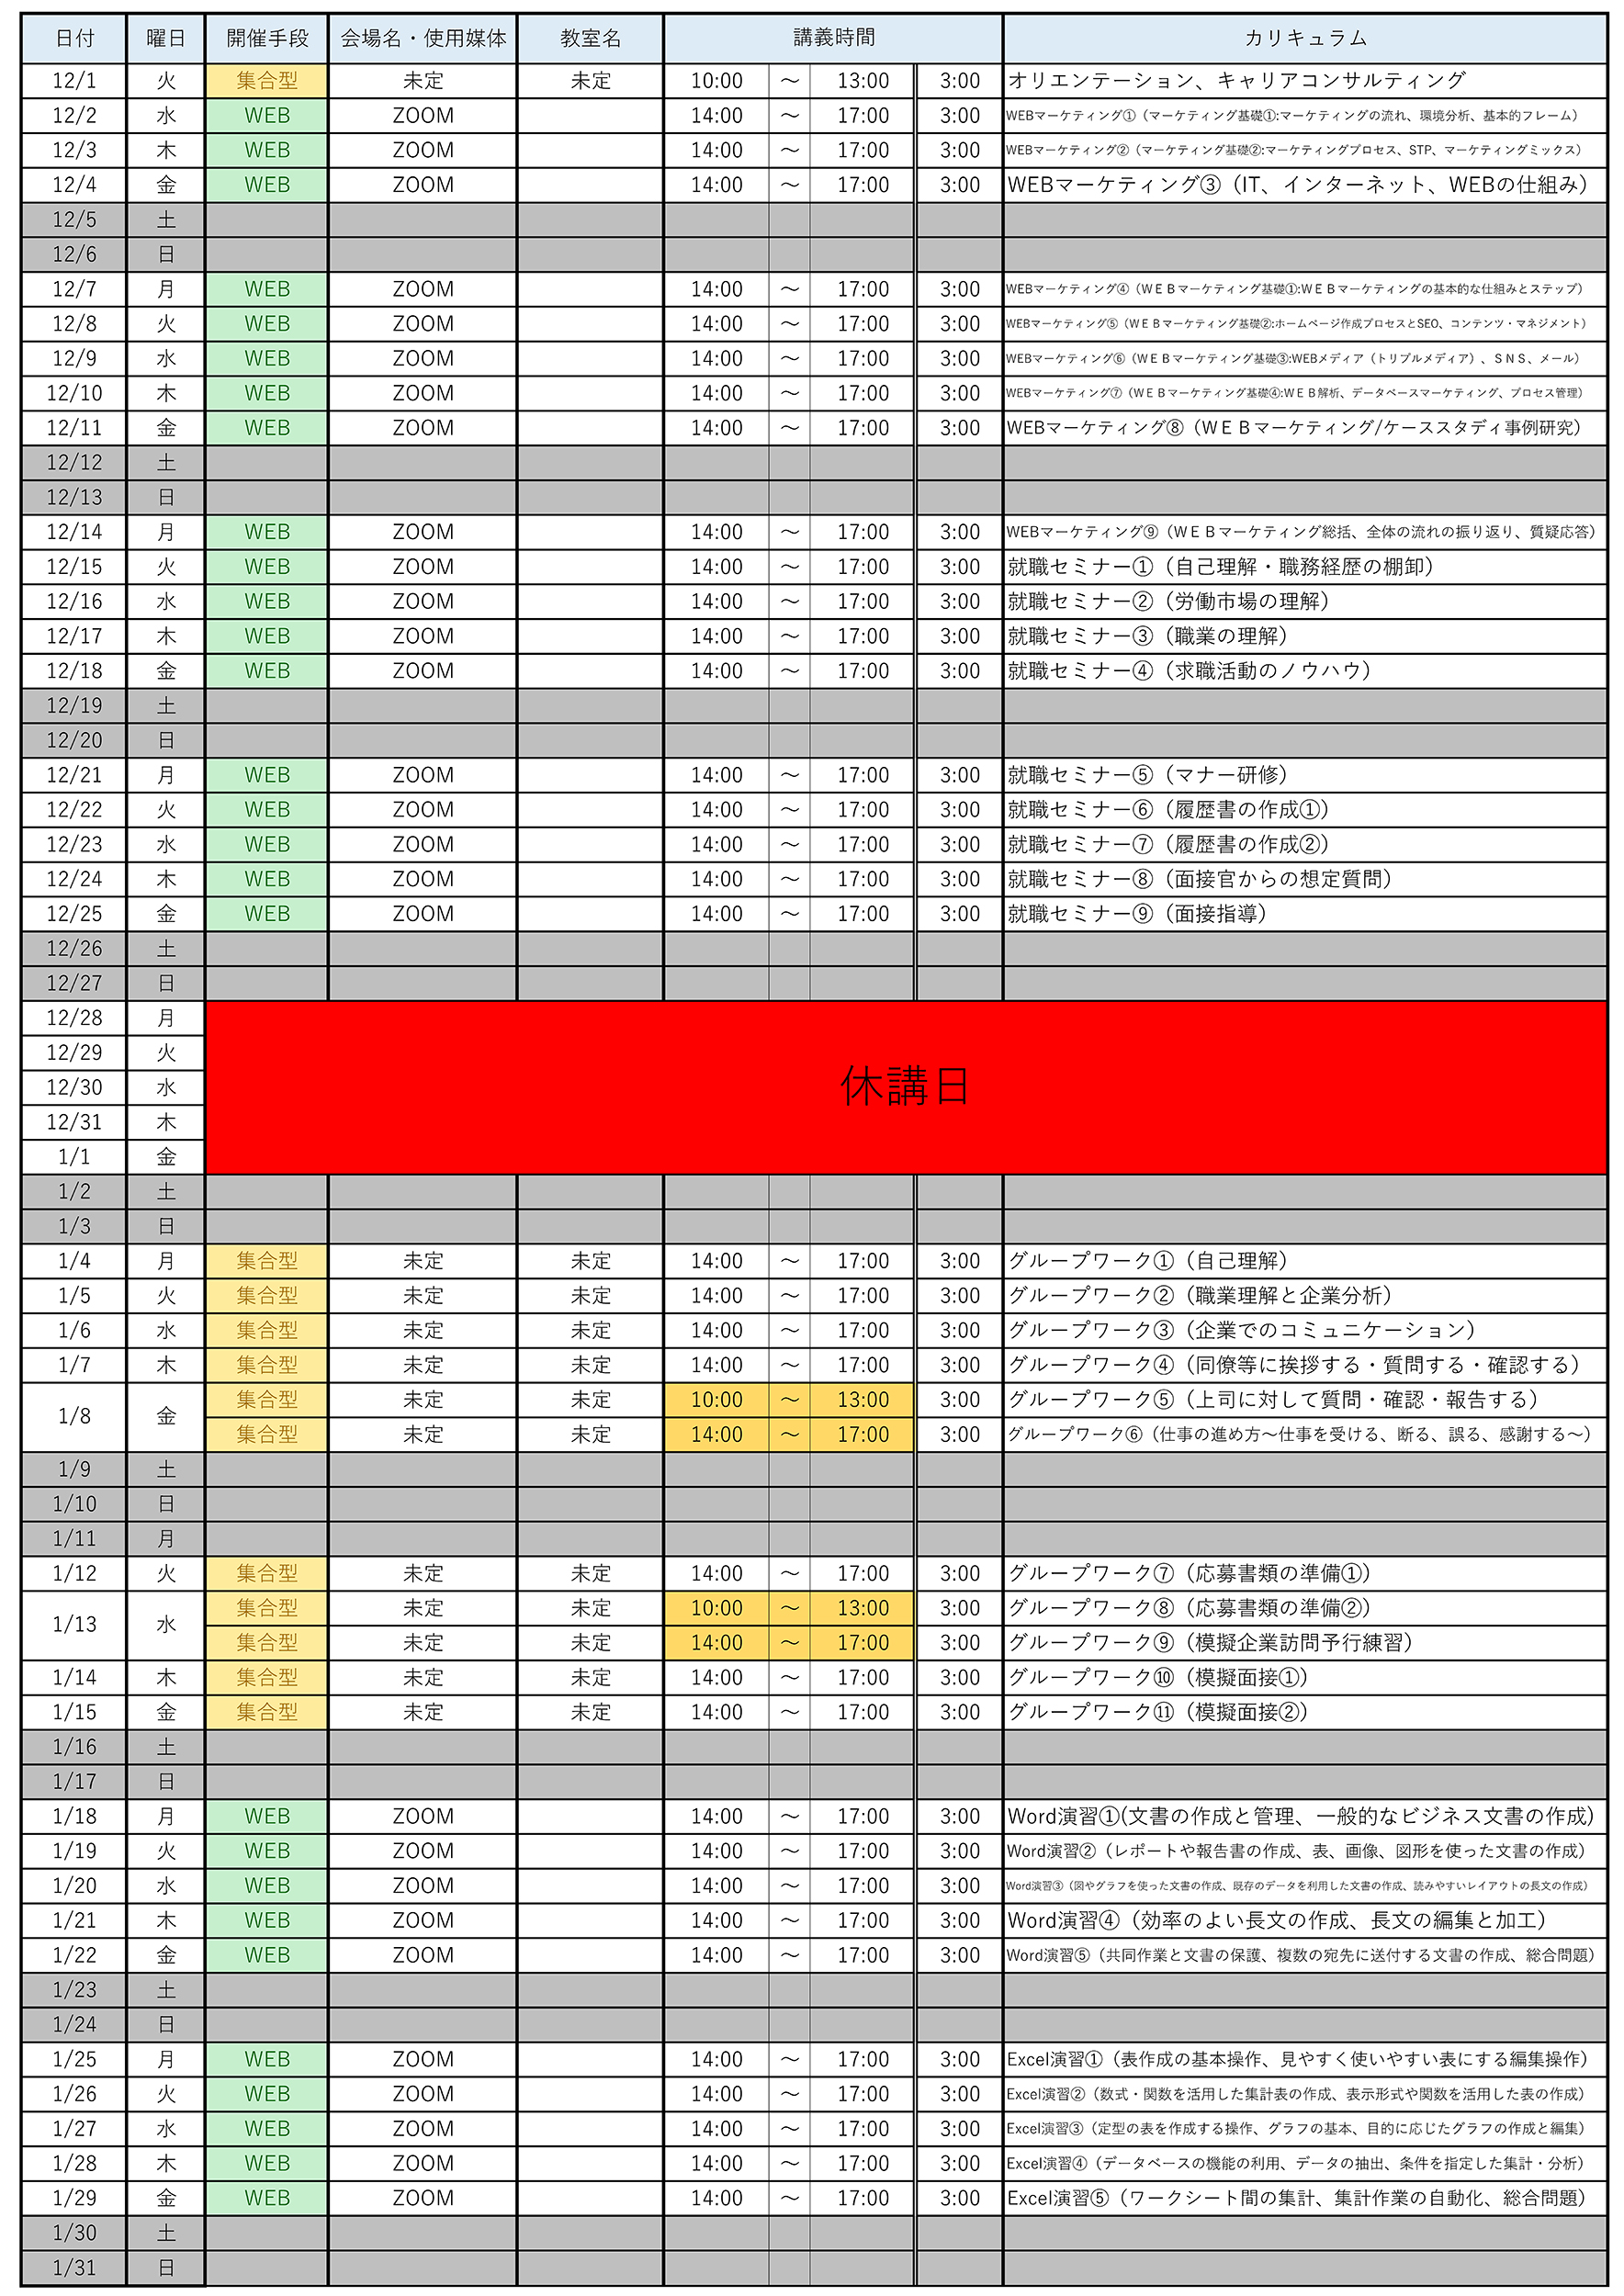 【1014再送】12月実施予定表_水道橋校2500px